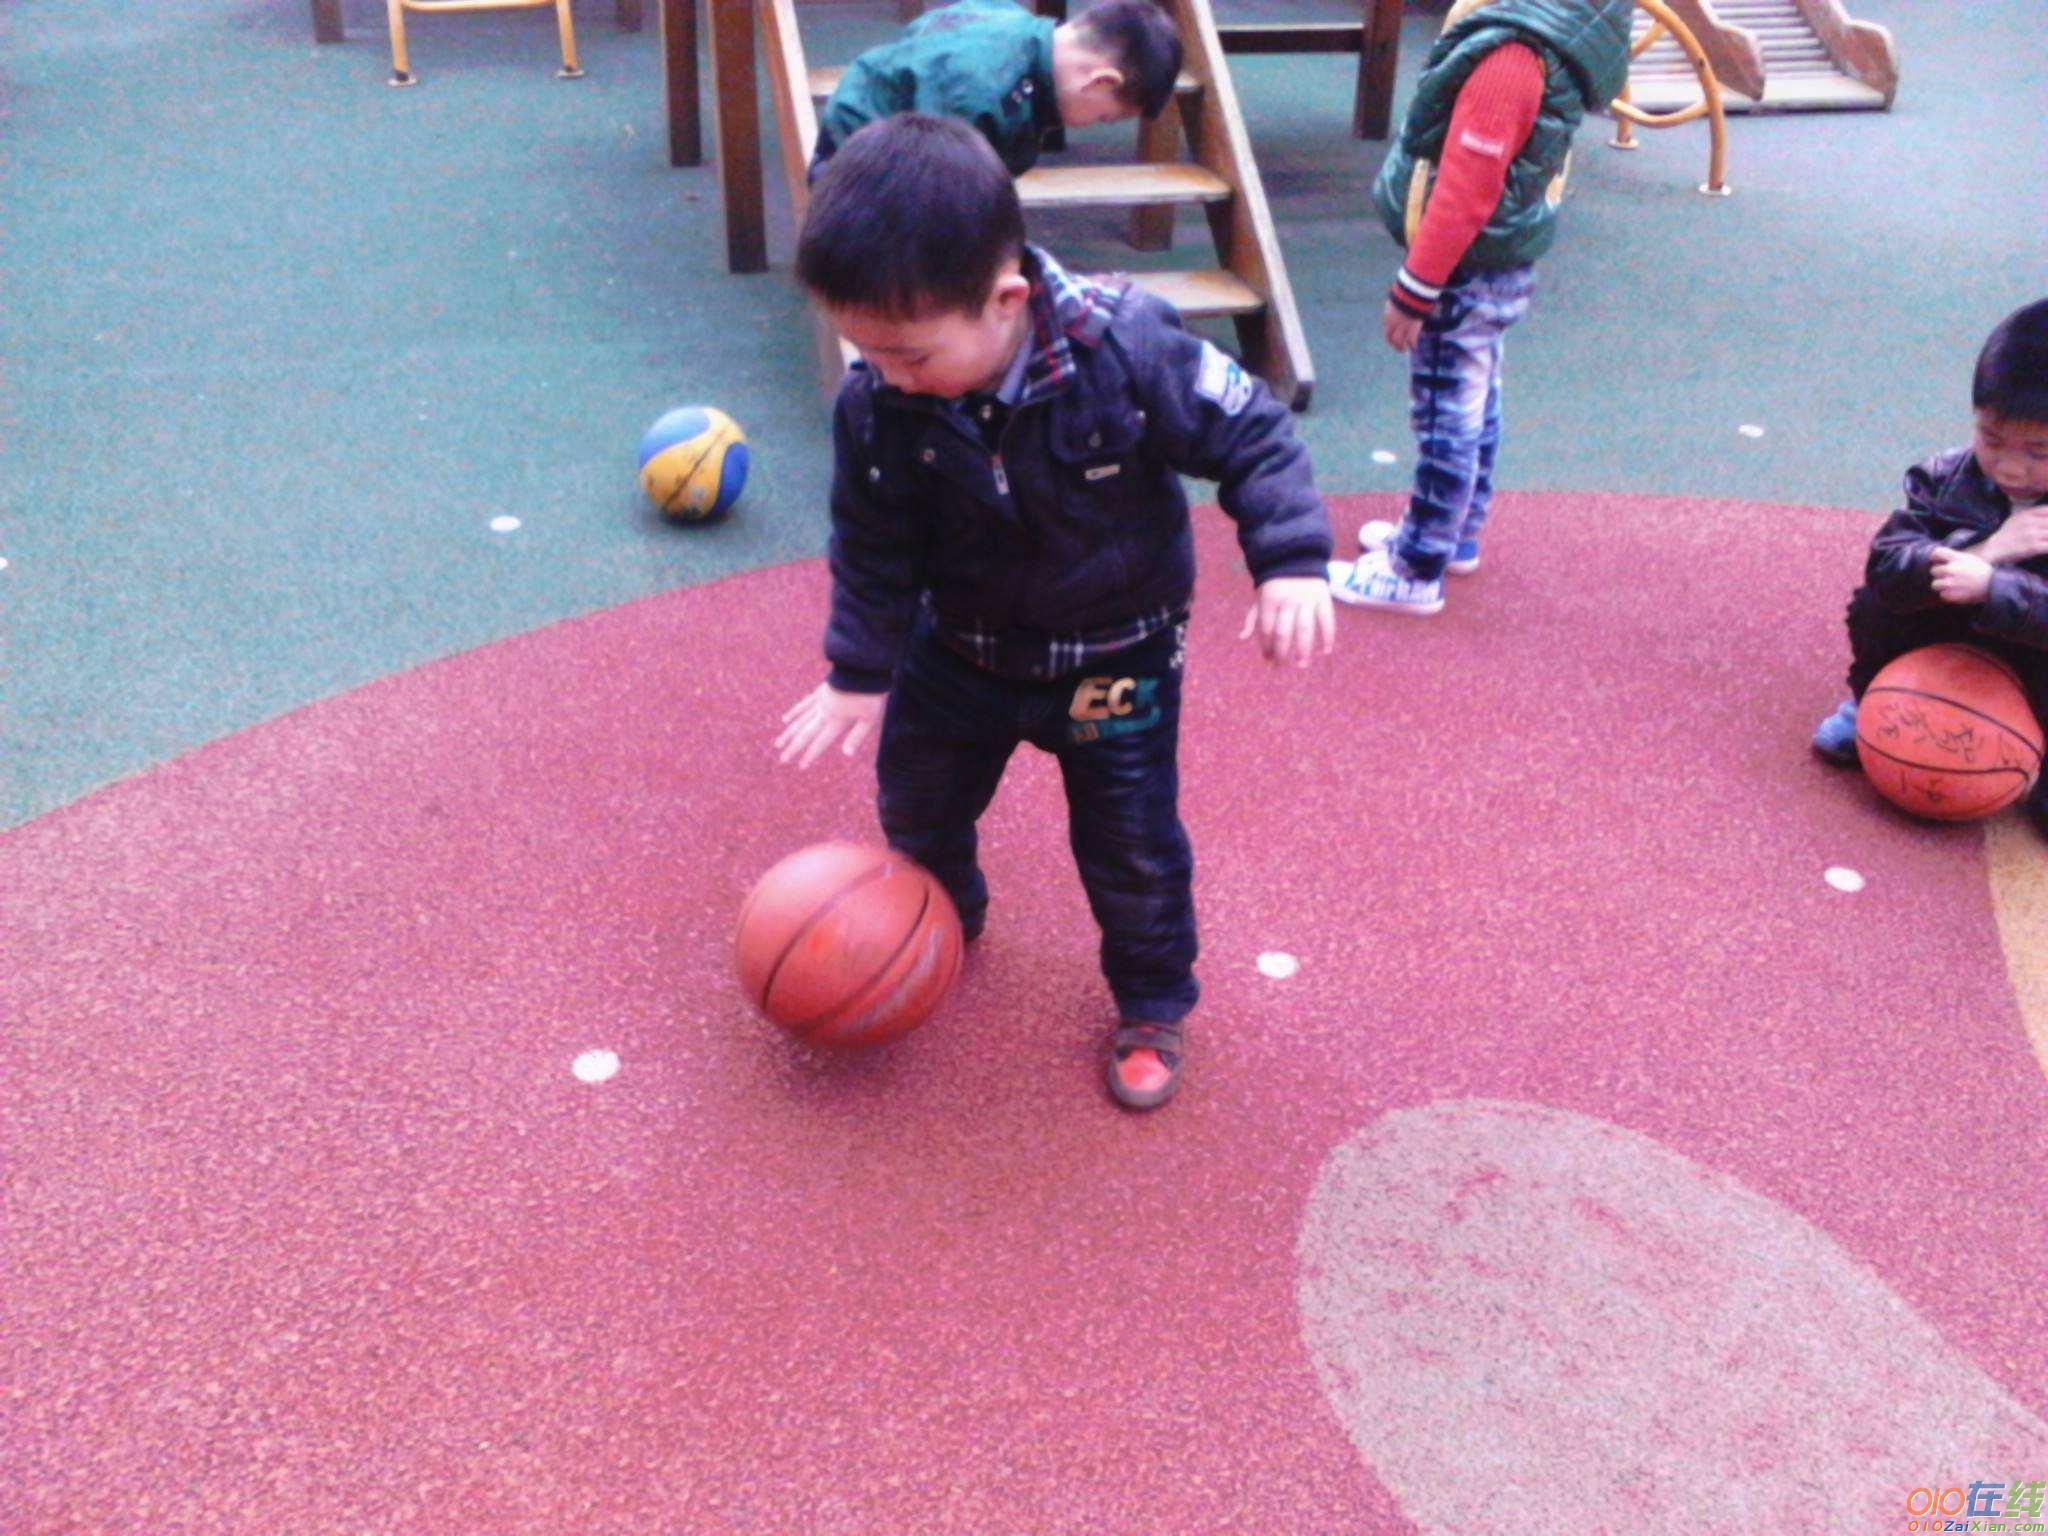 关于幼儿园体育拍球的教案设计